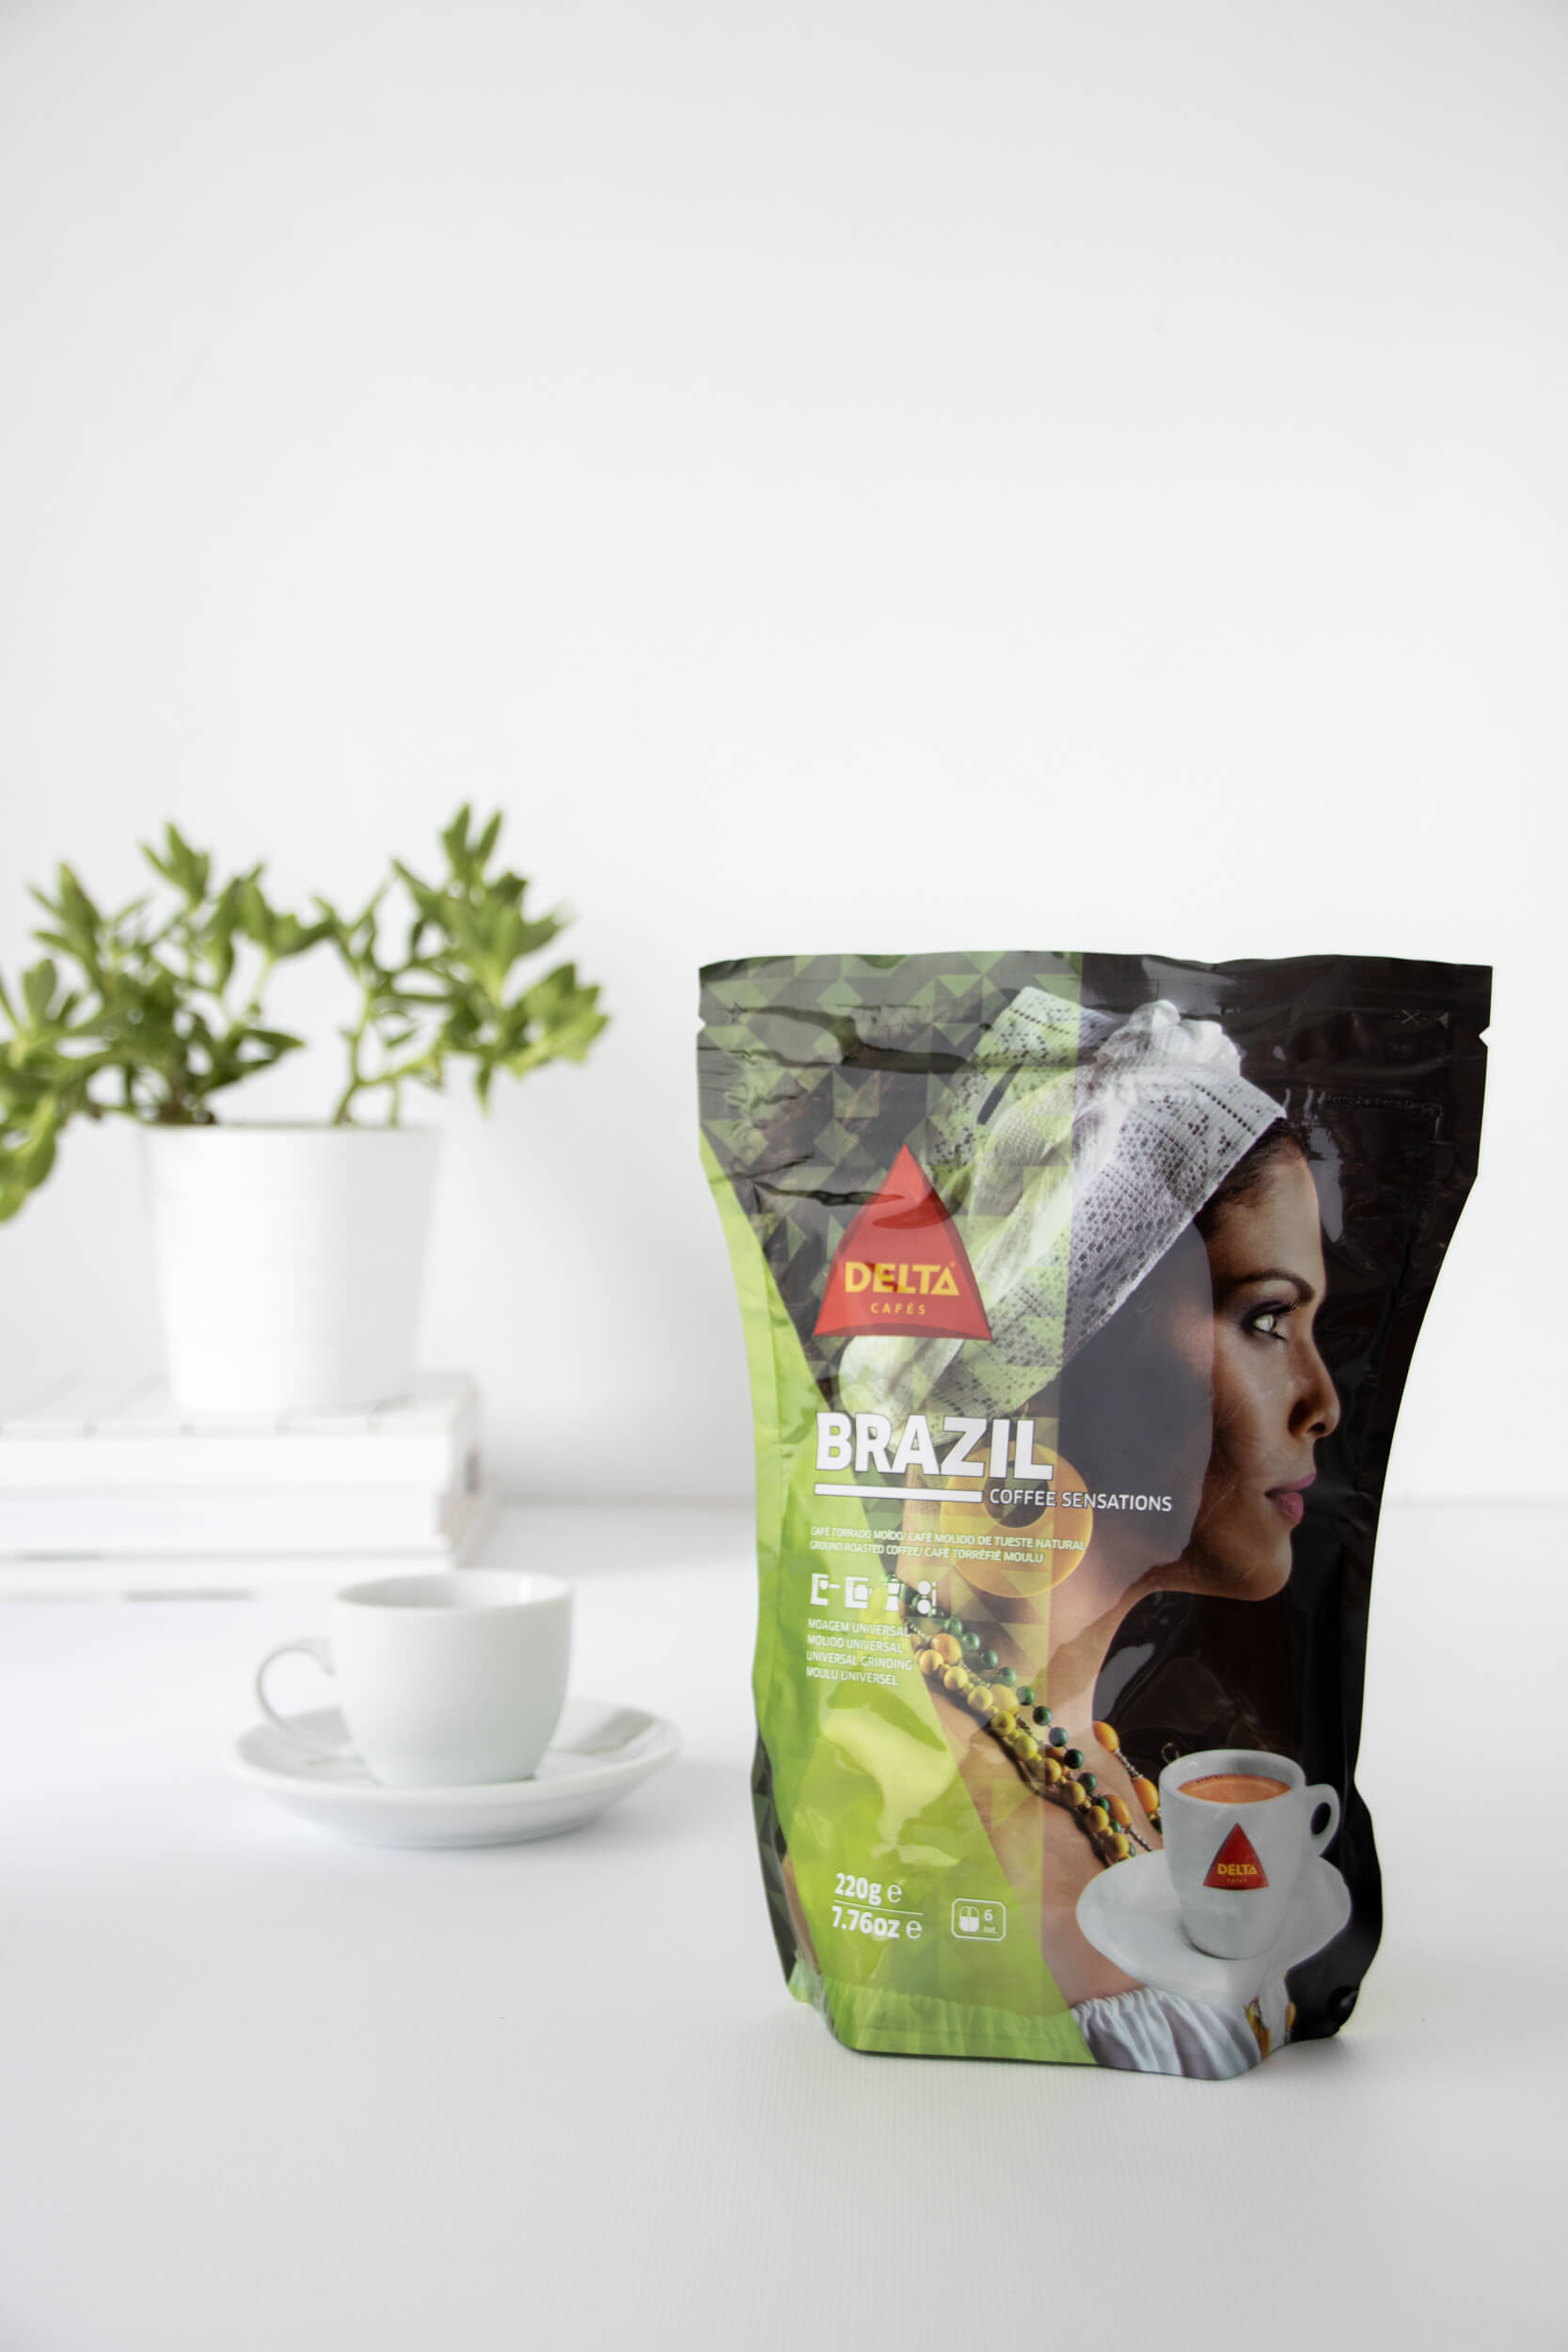 Delta Brazil Ground Coffee, 7.76 oz